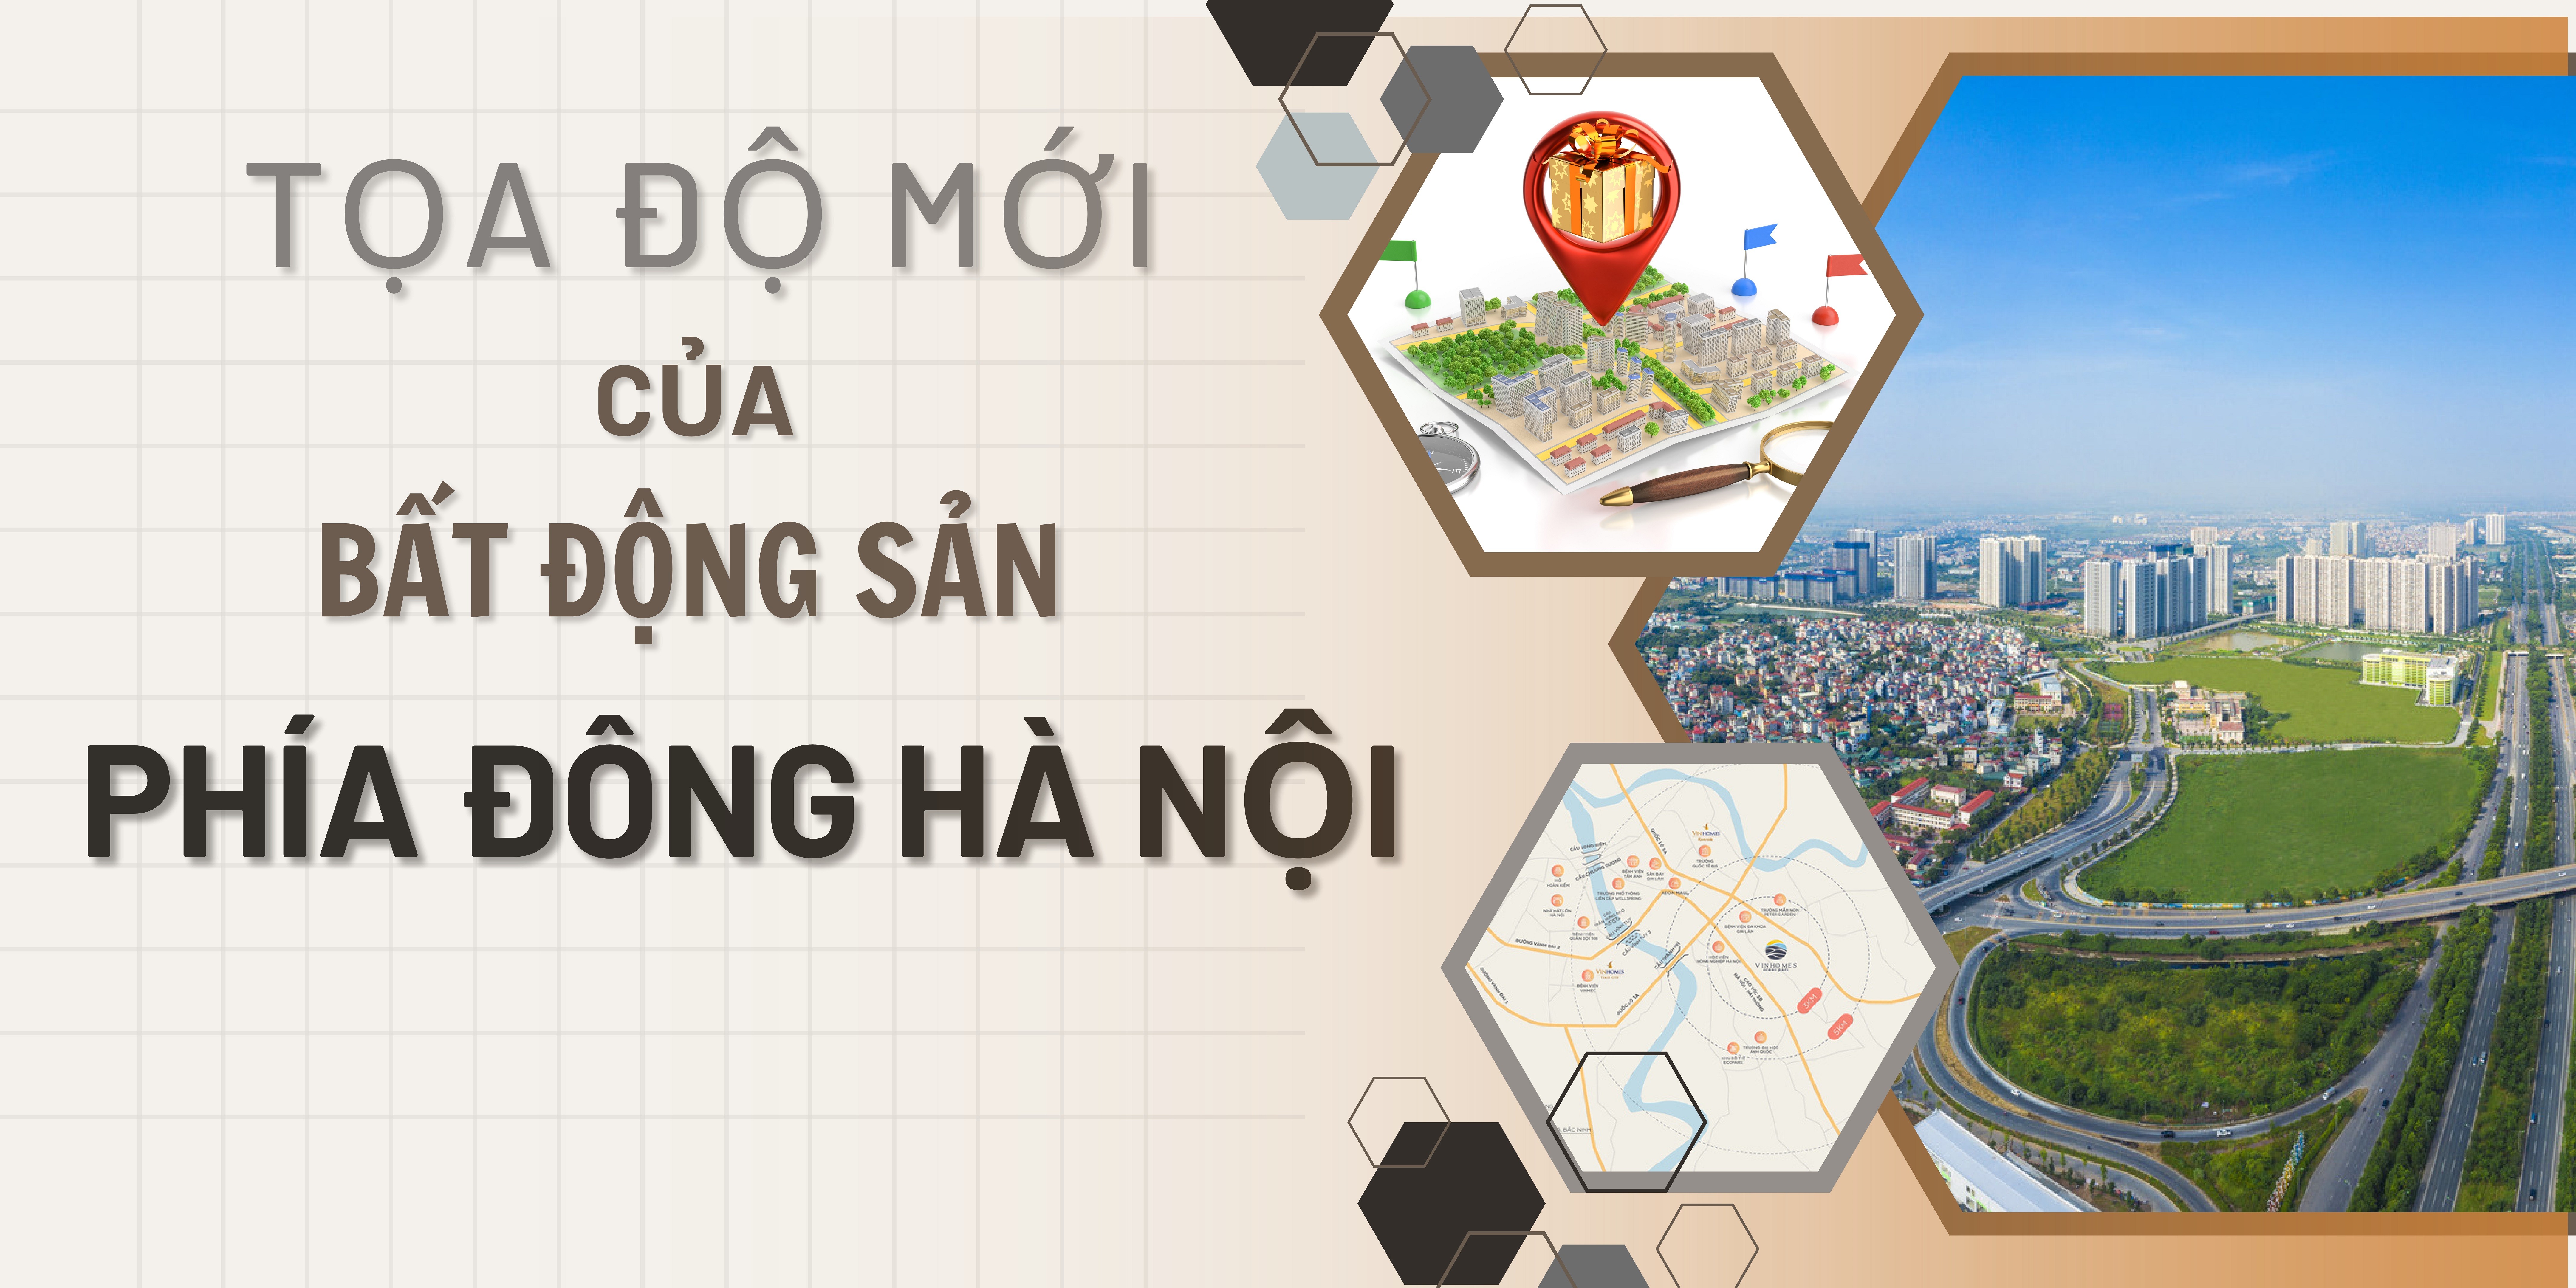 [Longform] Tọa độ mới của thị trường BĐS phía Đông Hà Nội